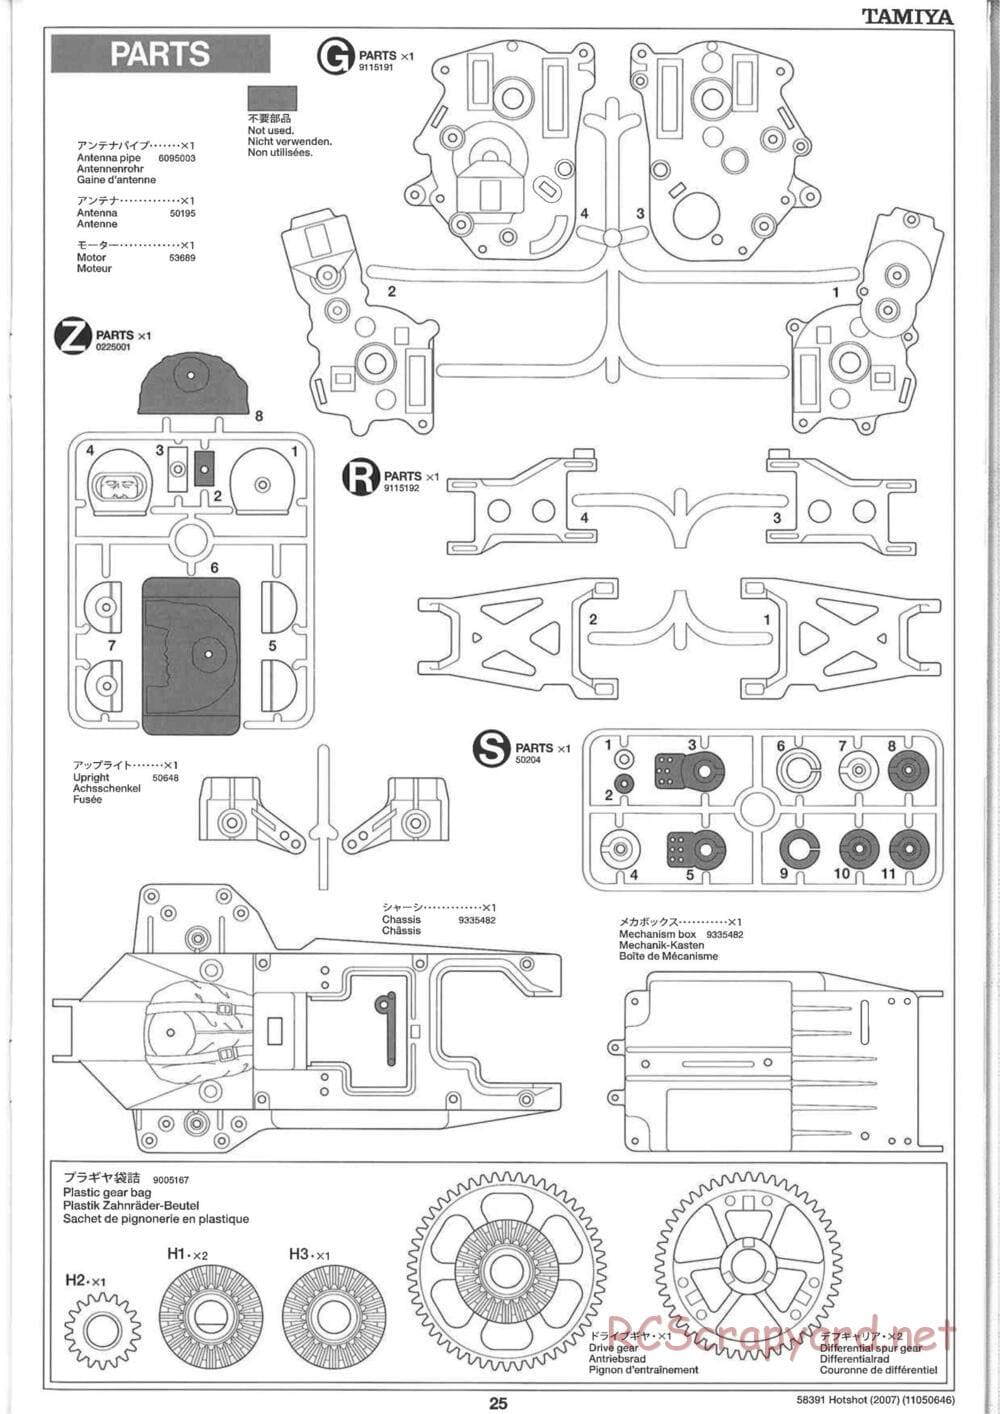 Tamiya - Hotshot - 2007 - HS Chassis - Manual - Page 25